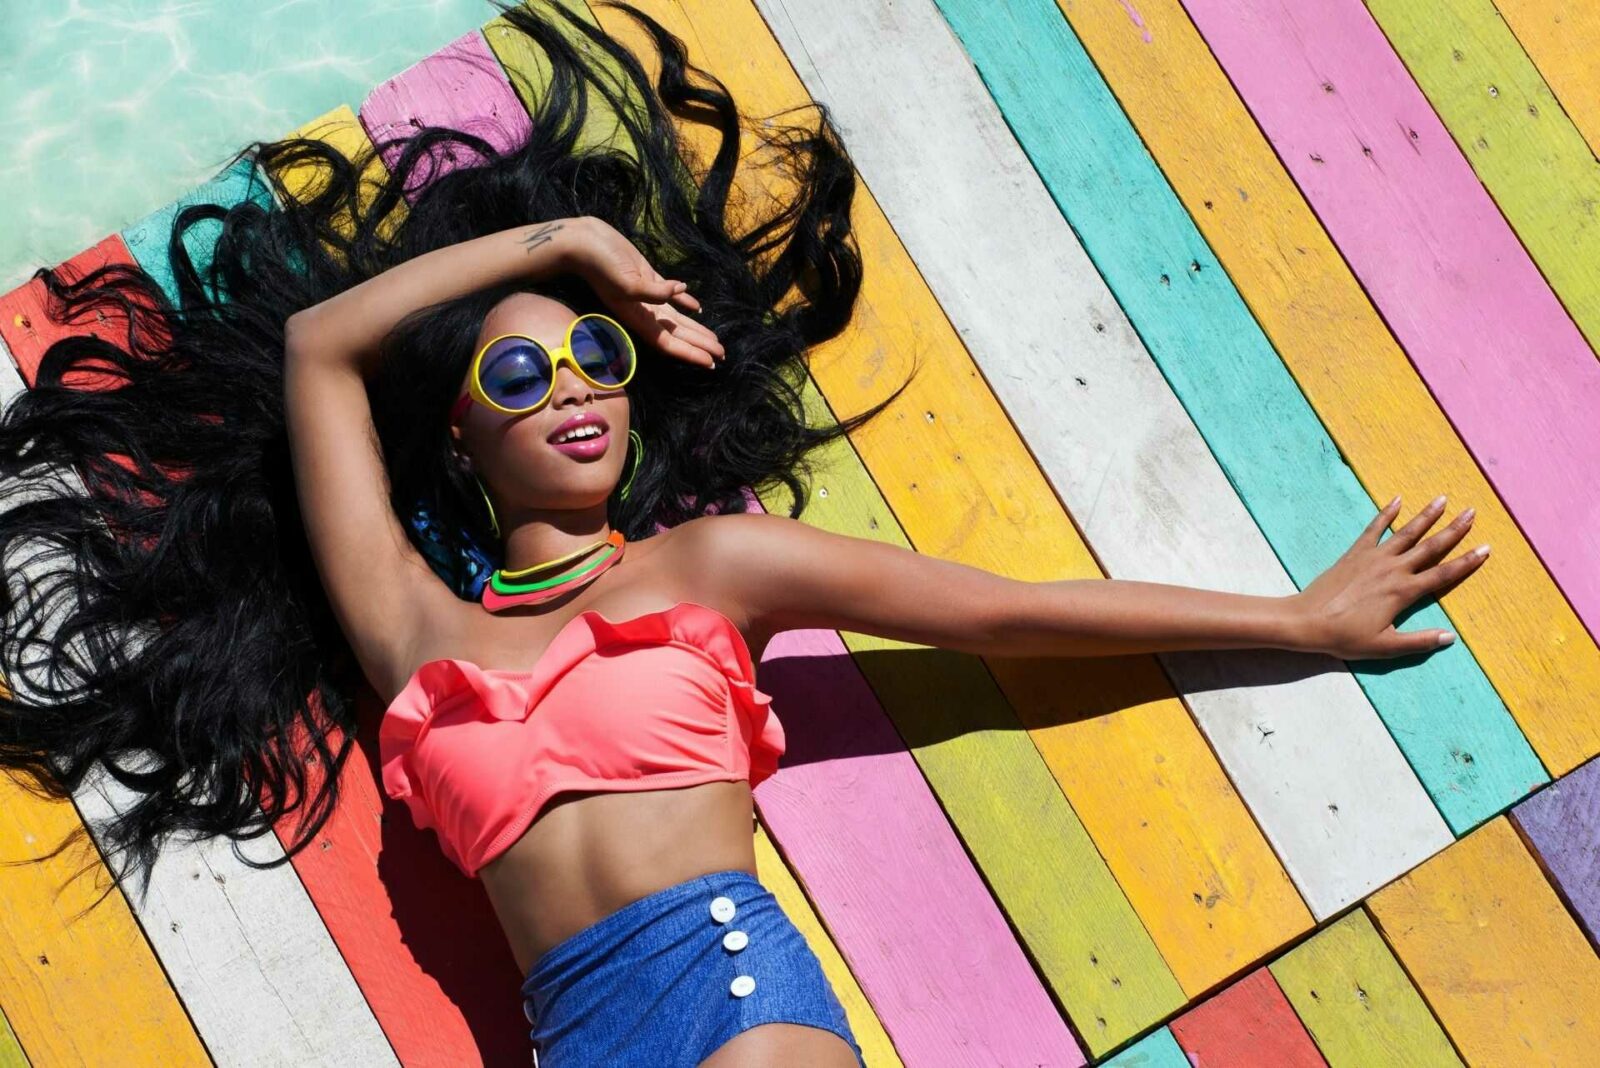 Mode, Beauté, Food, Lifestyle : notre sélection colorée à l'approche de l’été - Ô Magazine